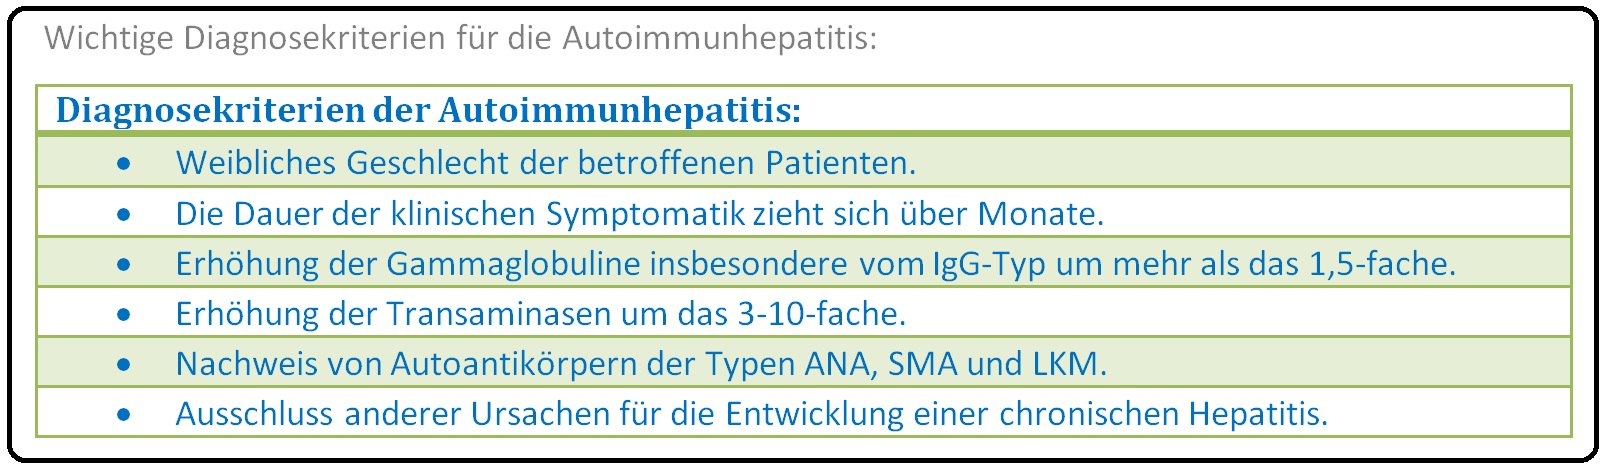 543 Wichtige Diagnosekriterien für die Autoimmunhepatitis